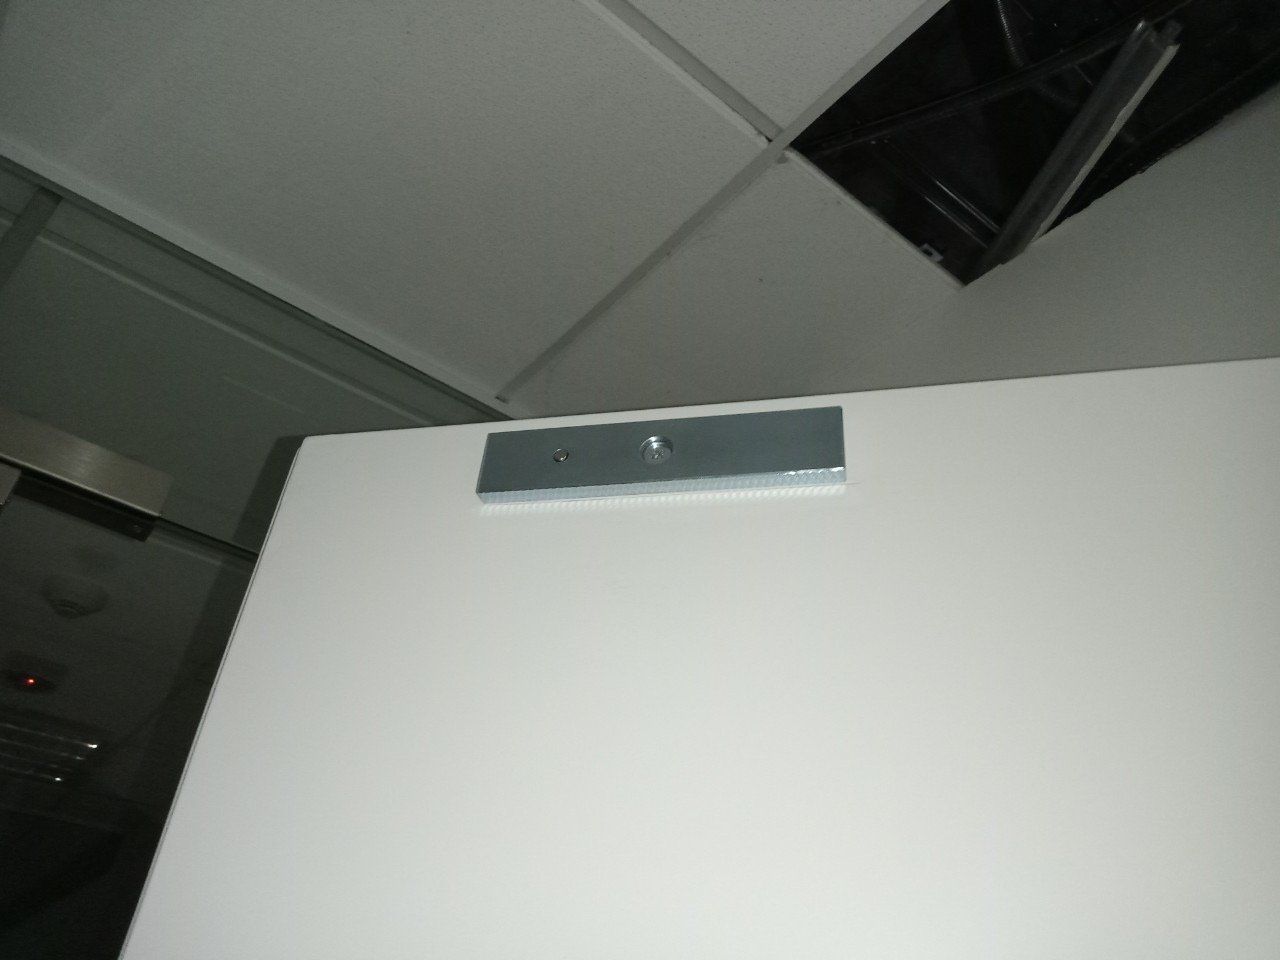  Hệ thống kiểm soát ra vào văn phòng HPS- EMLBASIC ( T06P3) 